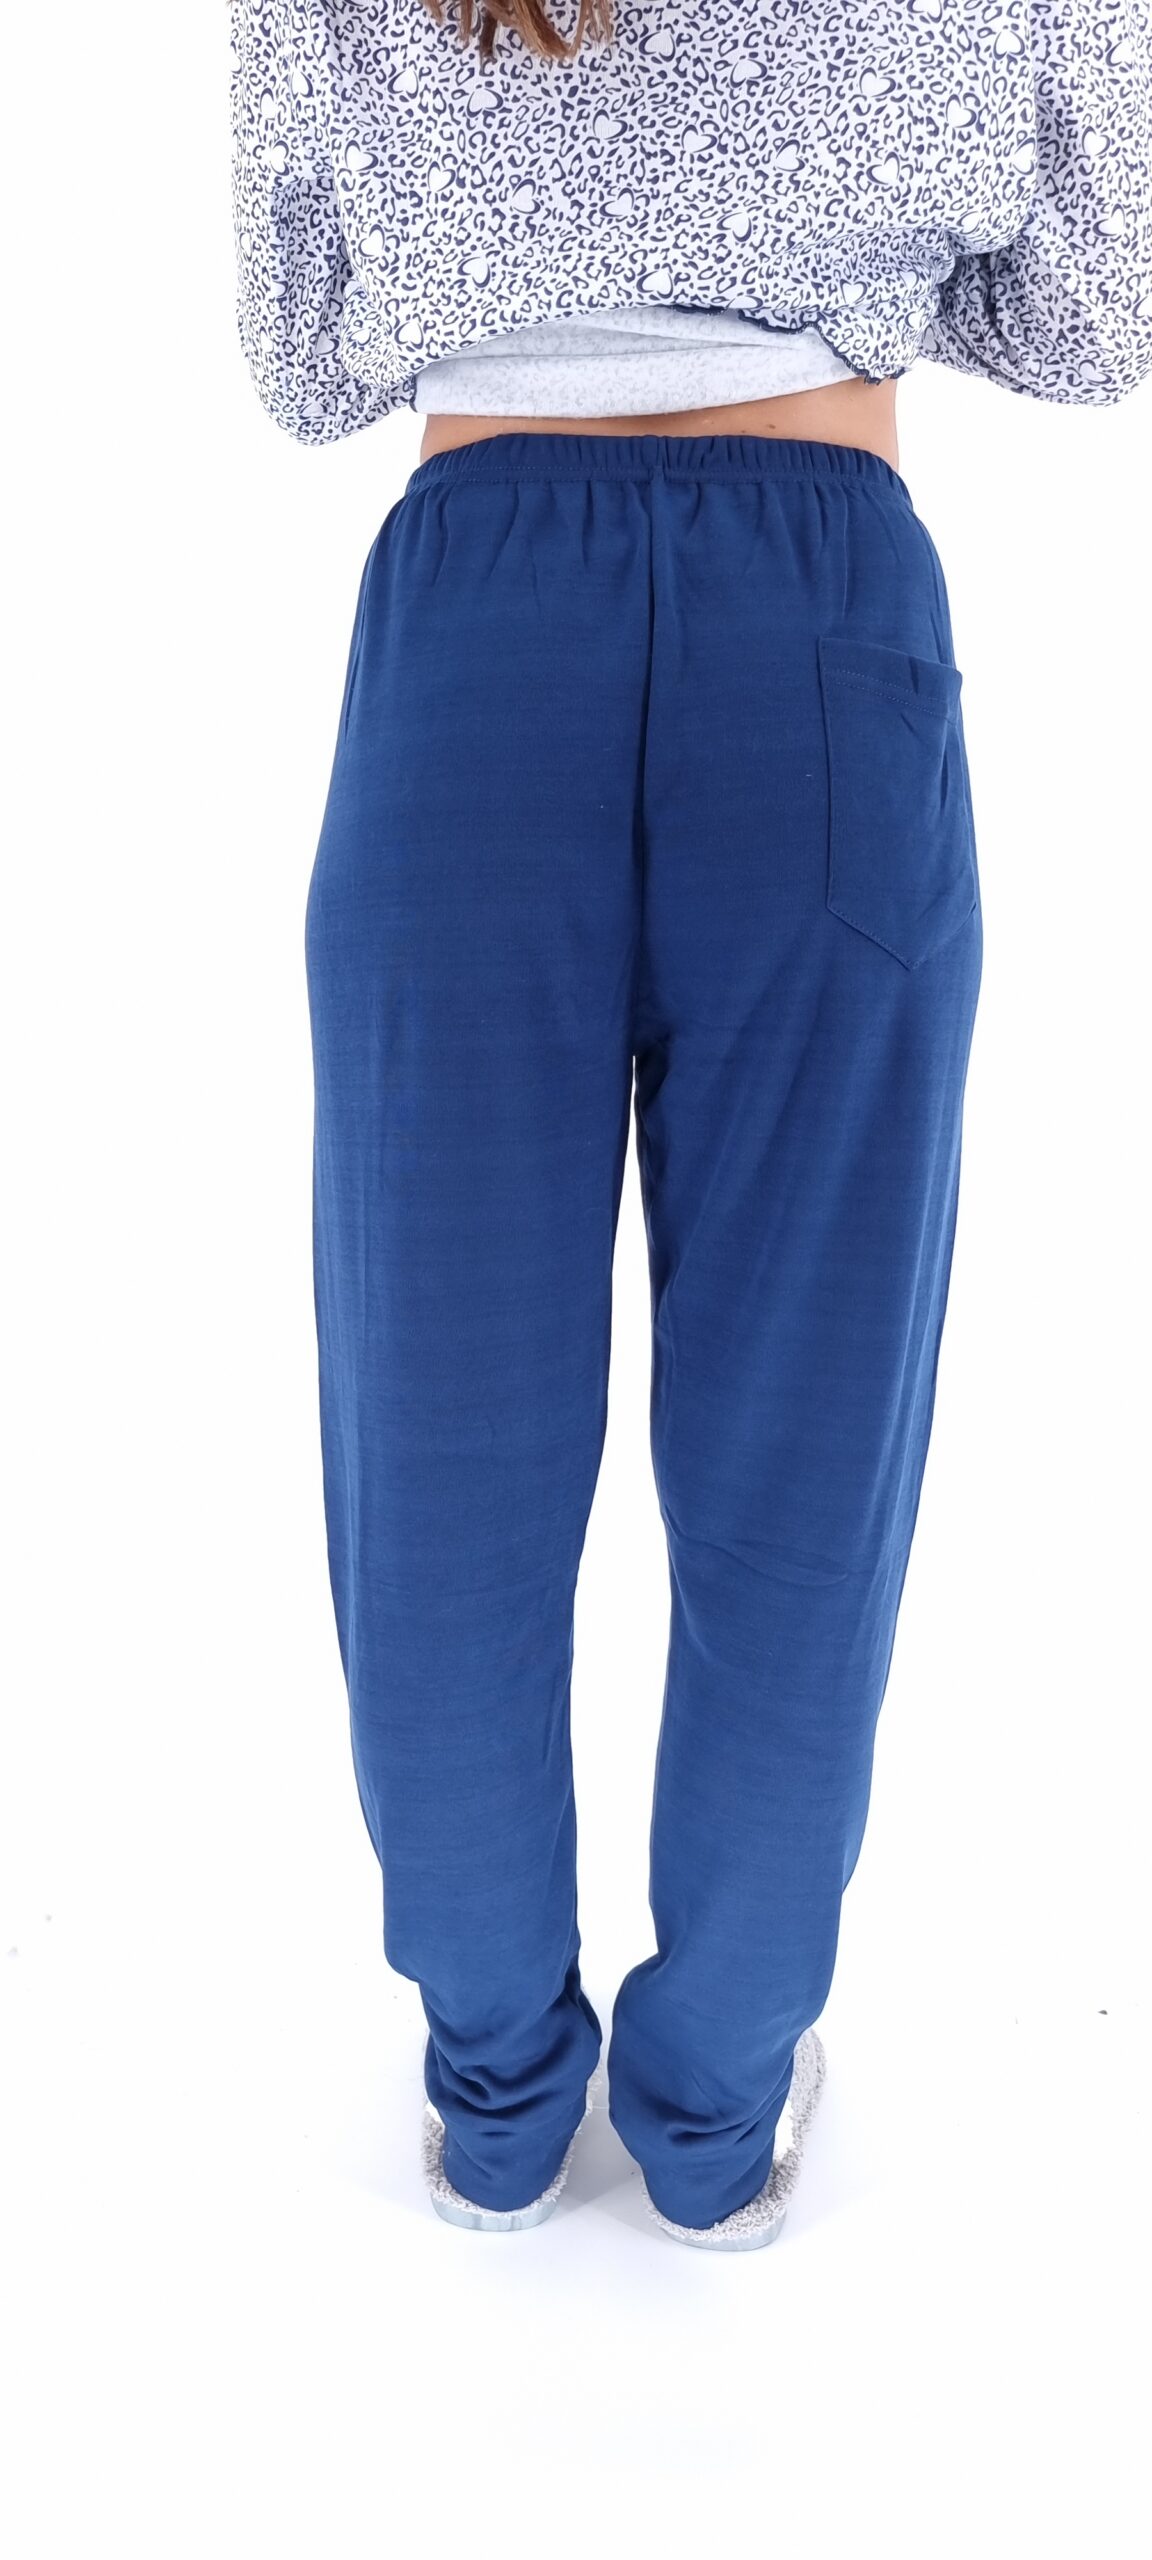 Πιτζάμες με μοτίβο καρδούλες και μονόχρωμο παντελόνι μπλε